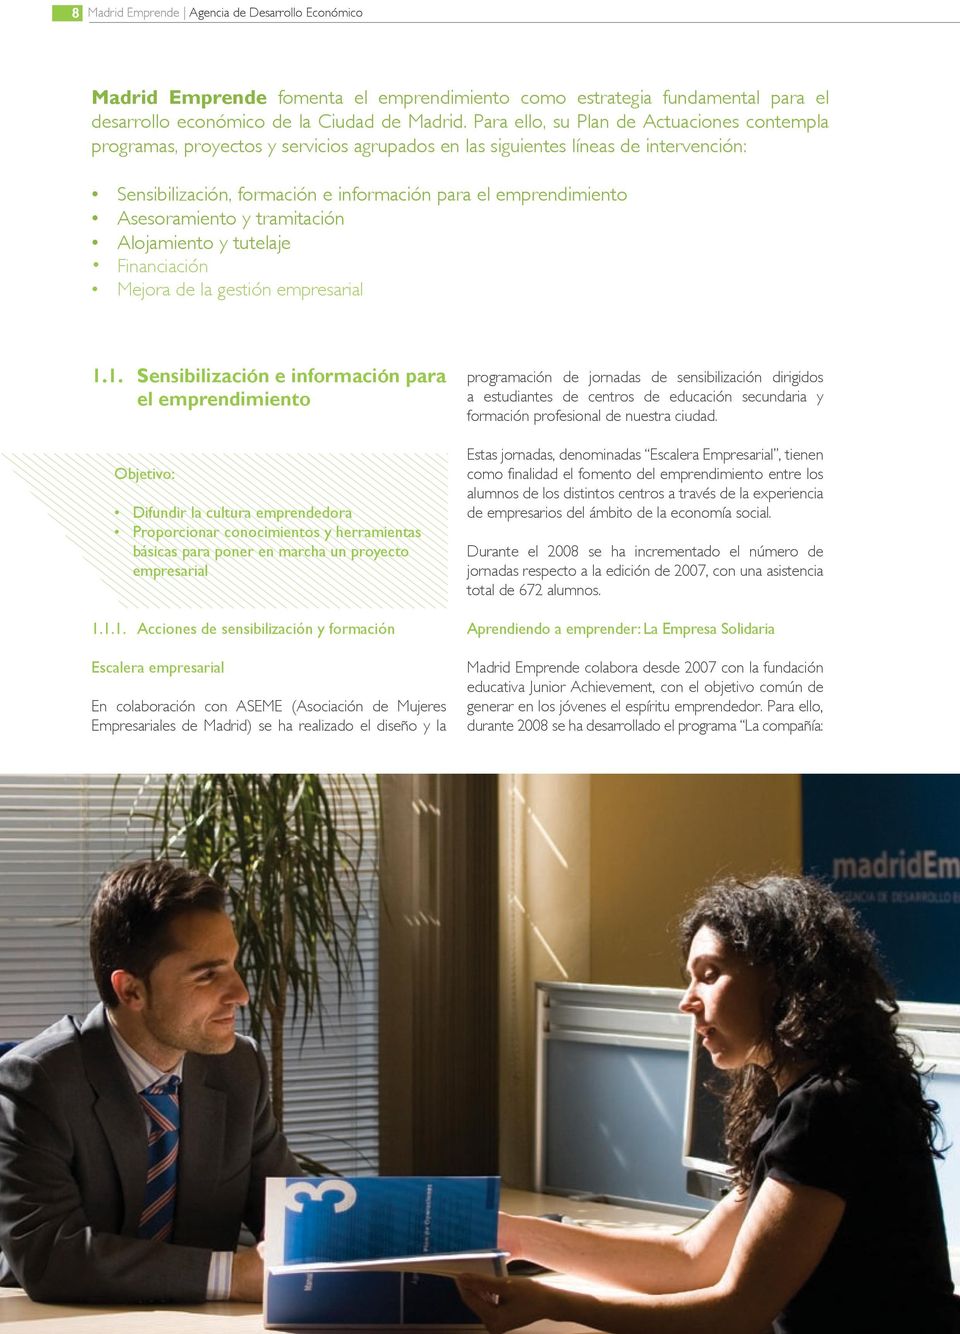 Asesoramiento y tramitación Alojamiento y tutelaje Financiación Mejora de la gestión empresarial 1.